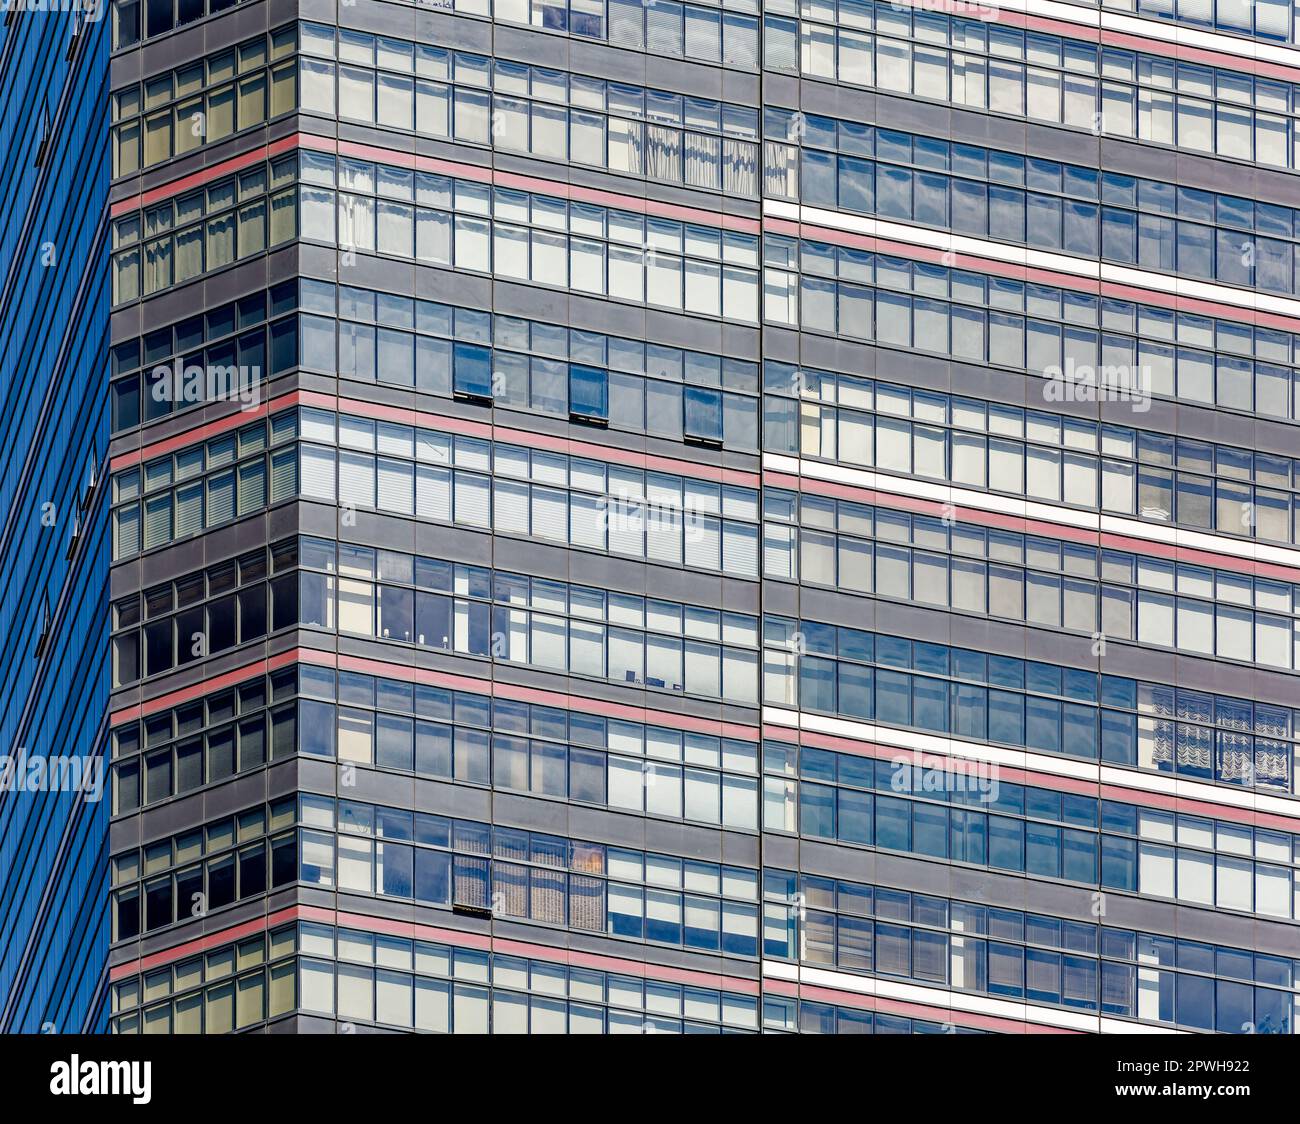 Le Three Lincoln Centre est une tour de condo de 54 étages en verre noir avec des bandes rouges, faisant partie d'un complexe qui comprend les installations de l'école Julliard. Banque D'Images